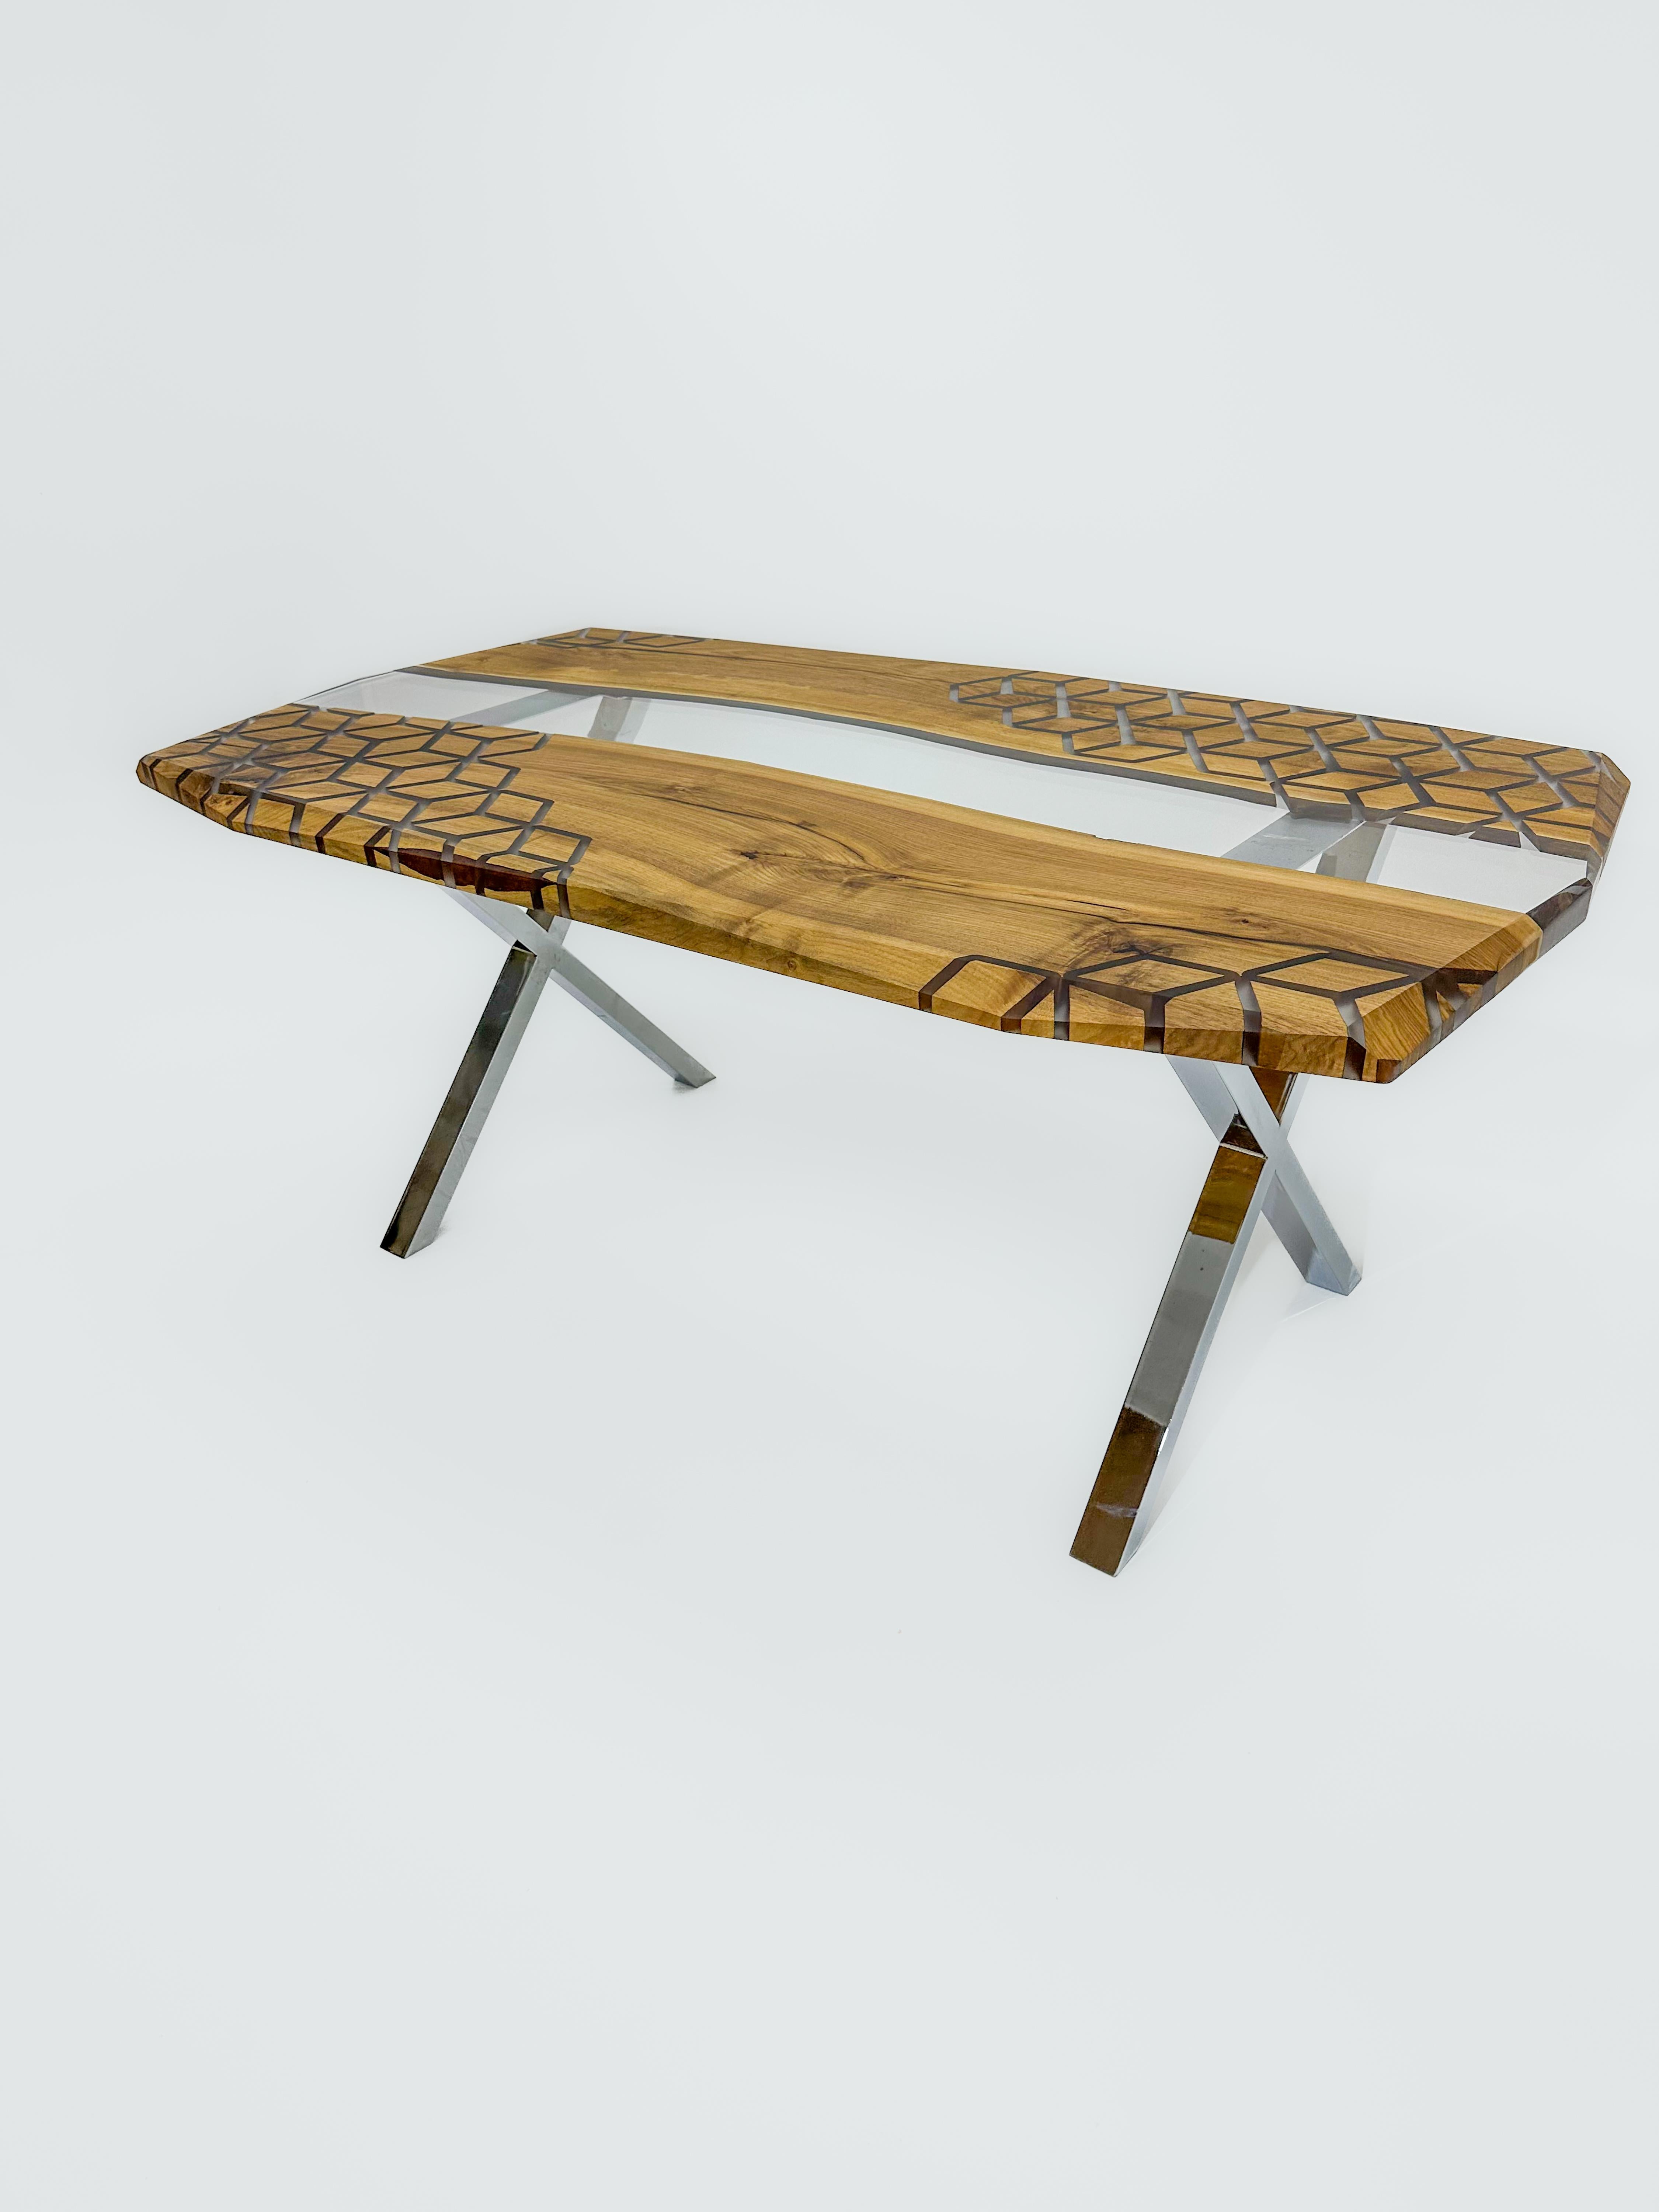 Table en résine époxy noyer

Cette table est fabriquée en bois de noyer ancien, vieux de 500 ans. Les modèles sont réalisés à l'aide de la technologie CNC. D'autres pièces sont entièrement fabriquées à la main.

Des tailles, des couleurs et des